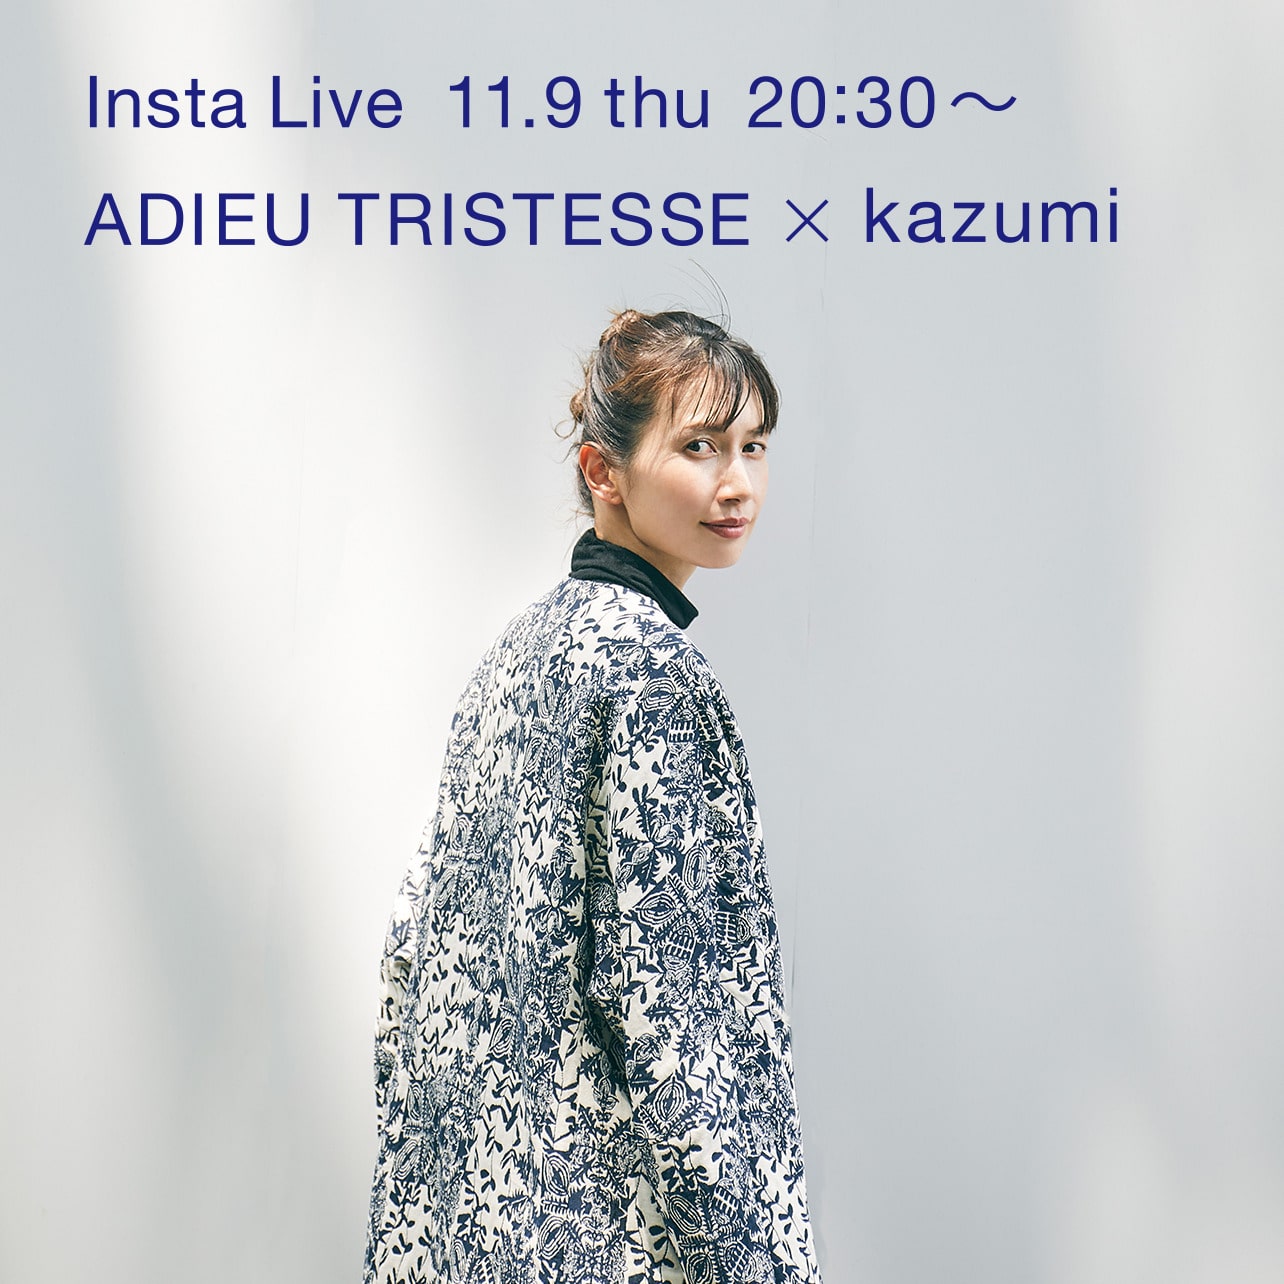 ADIEU TRISTESSE × kazumi Insta Live